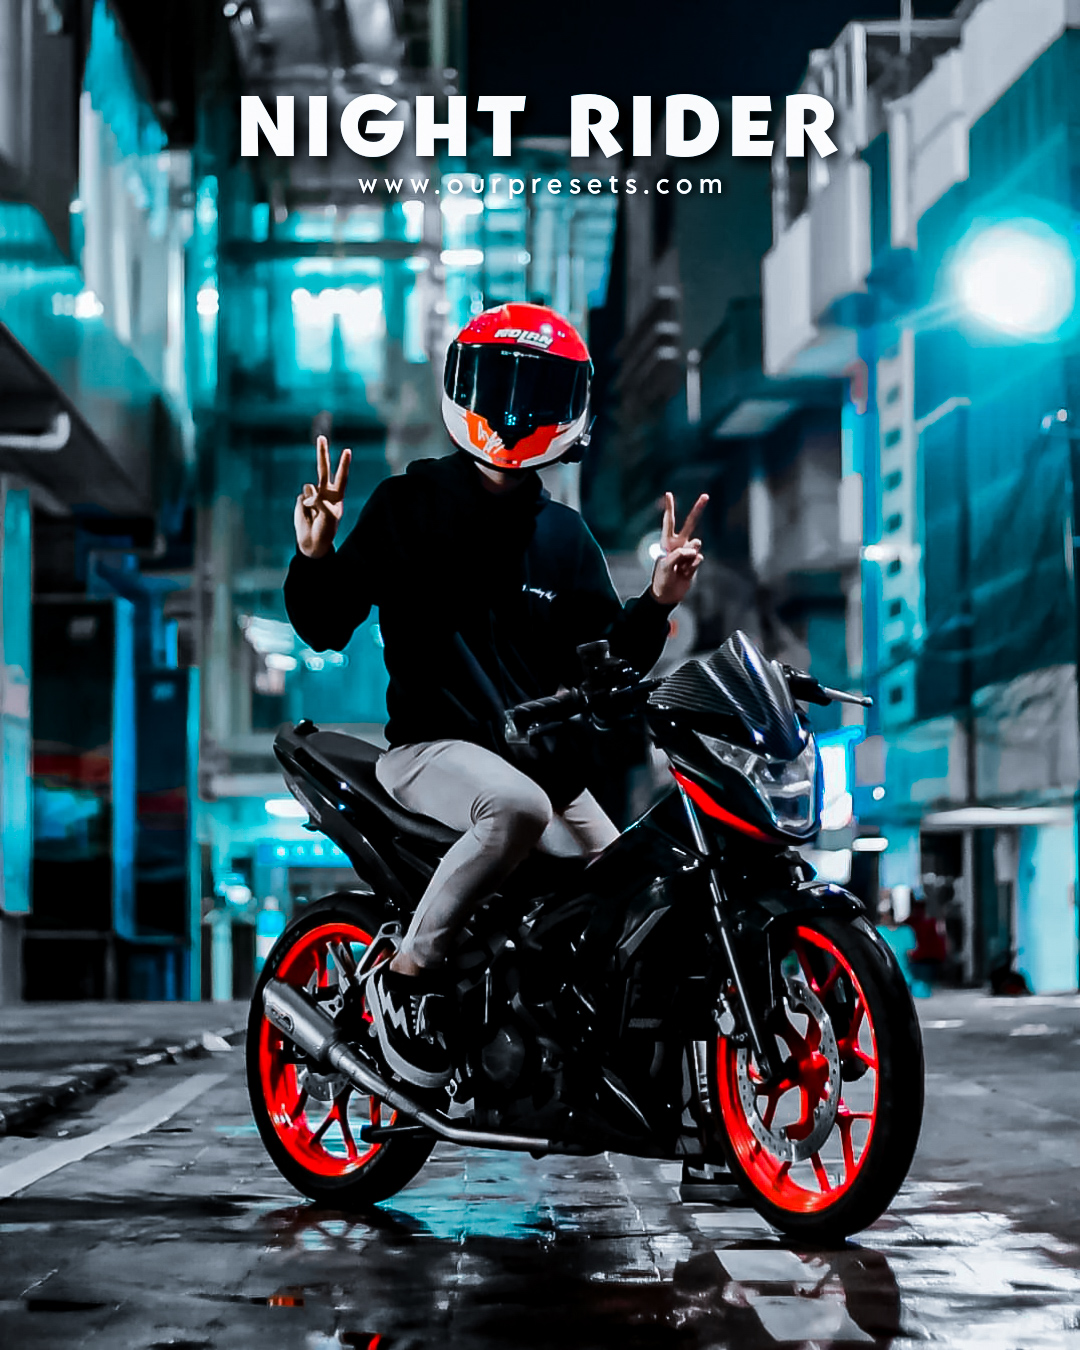 Night rider lightroom presets